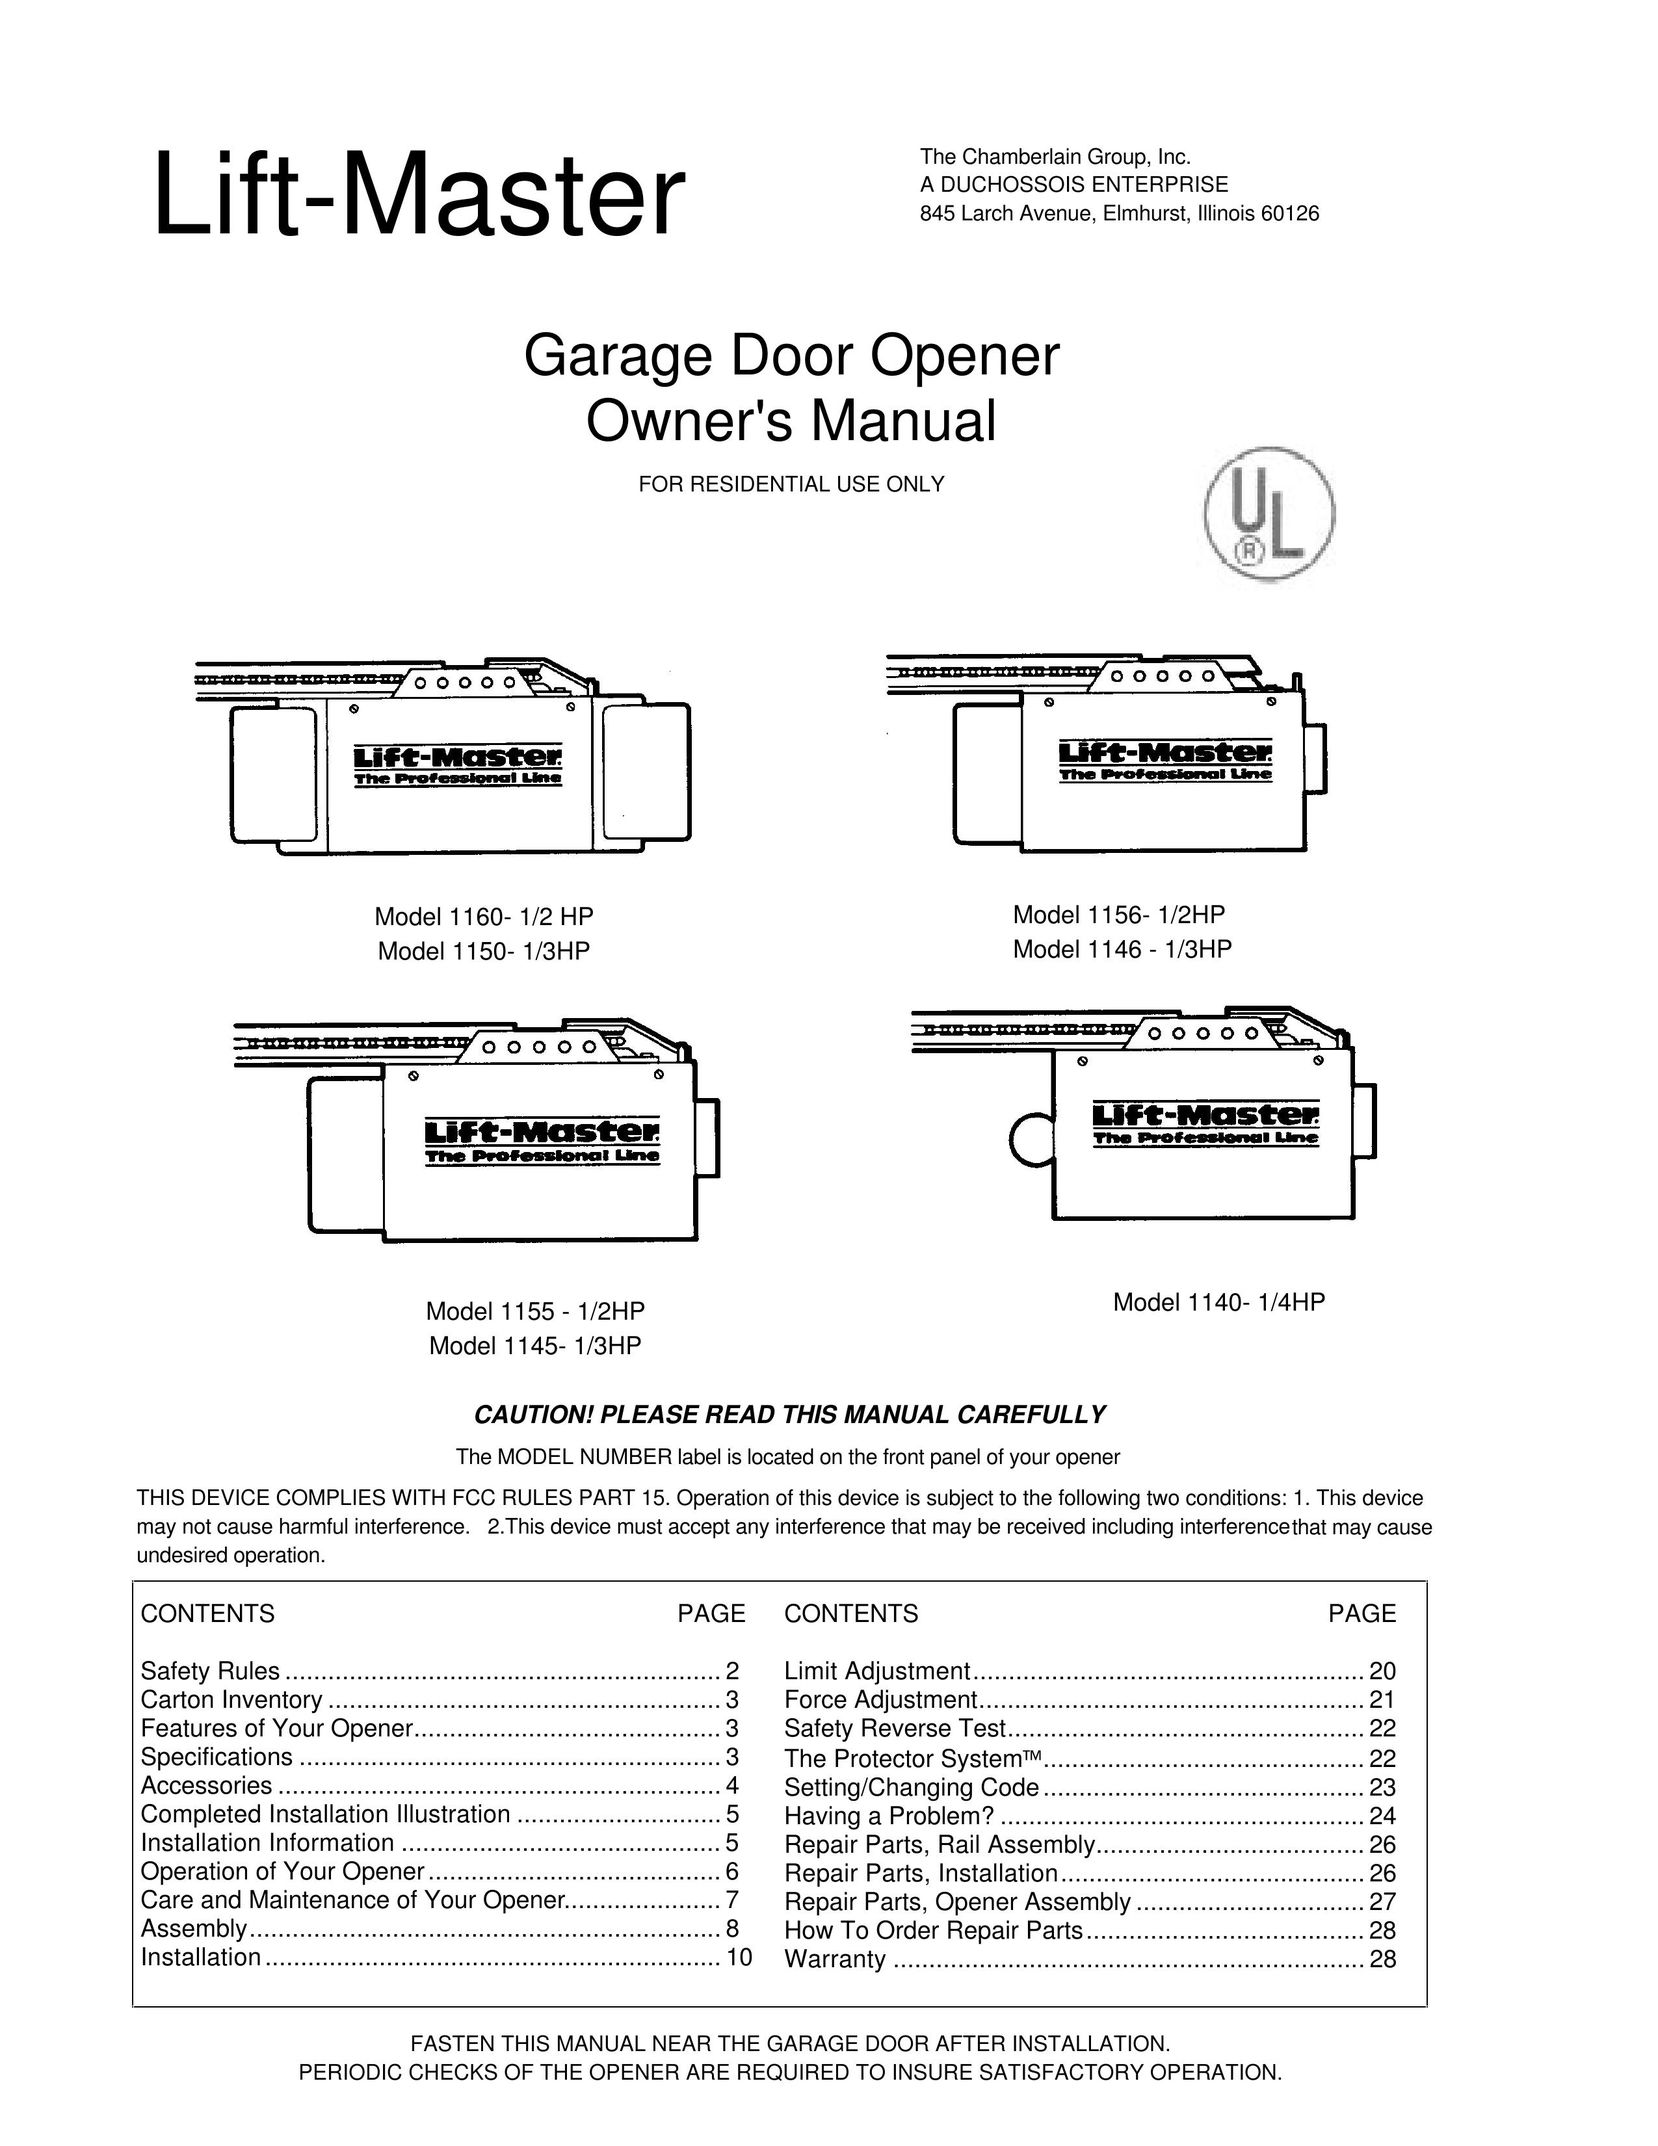 Chamberlain 1145- 1/3HP Garage Door Opener User Manual (Page 1)